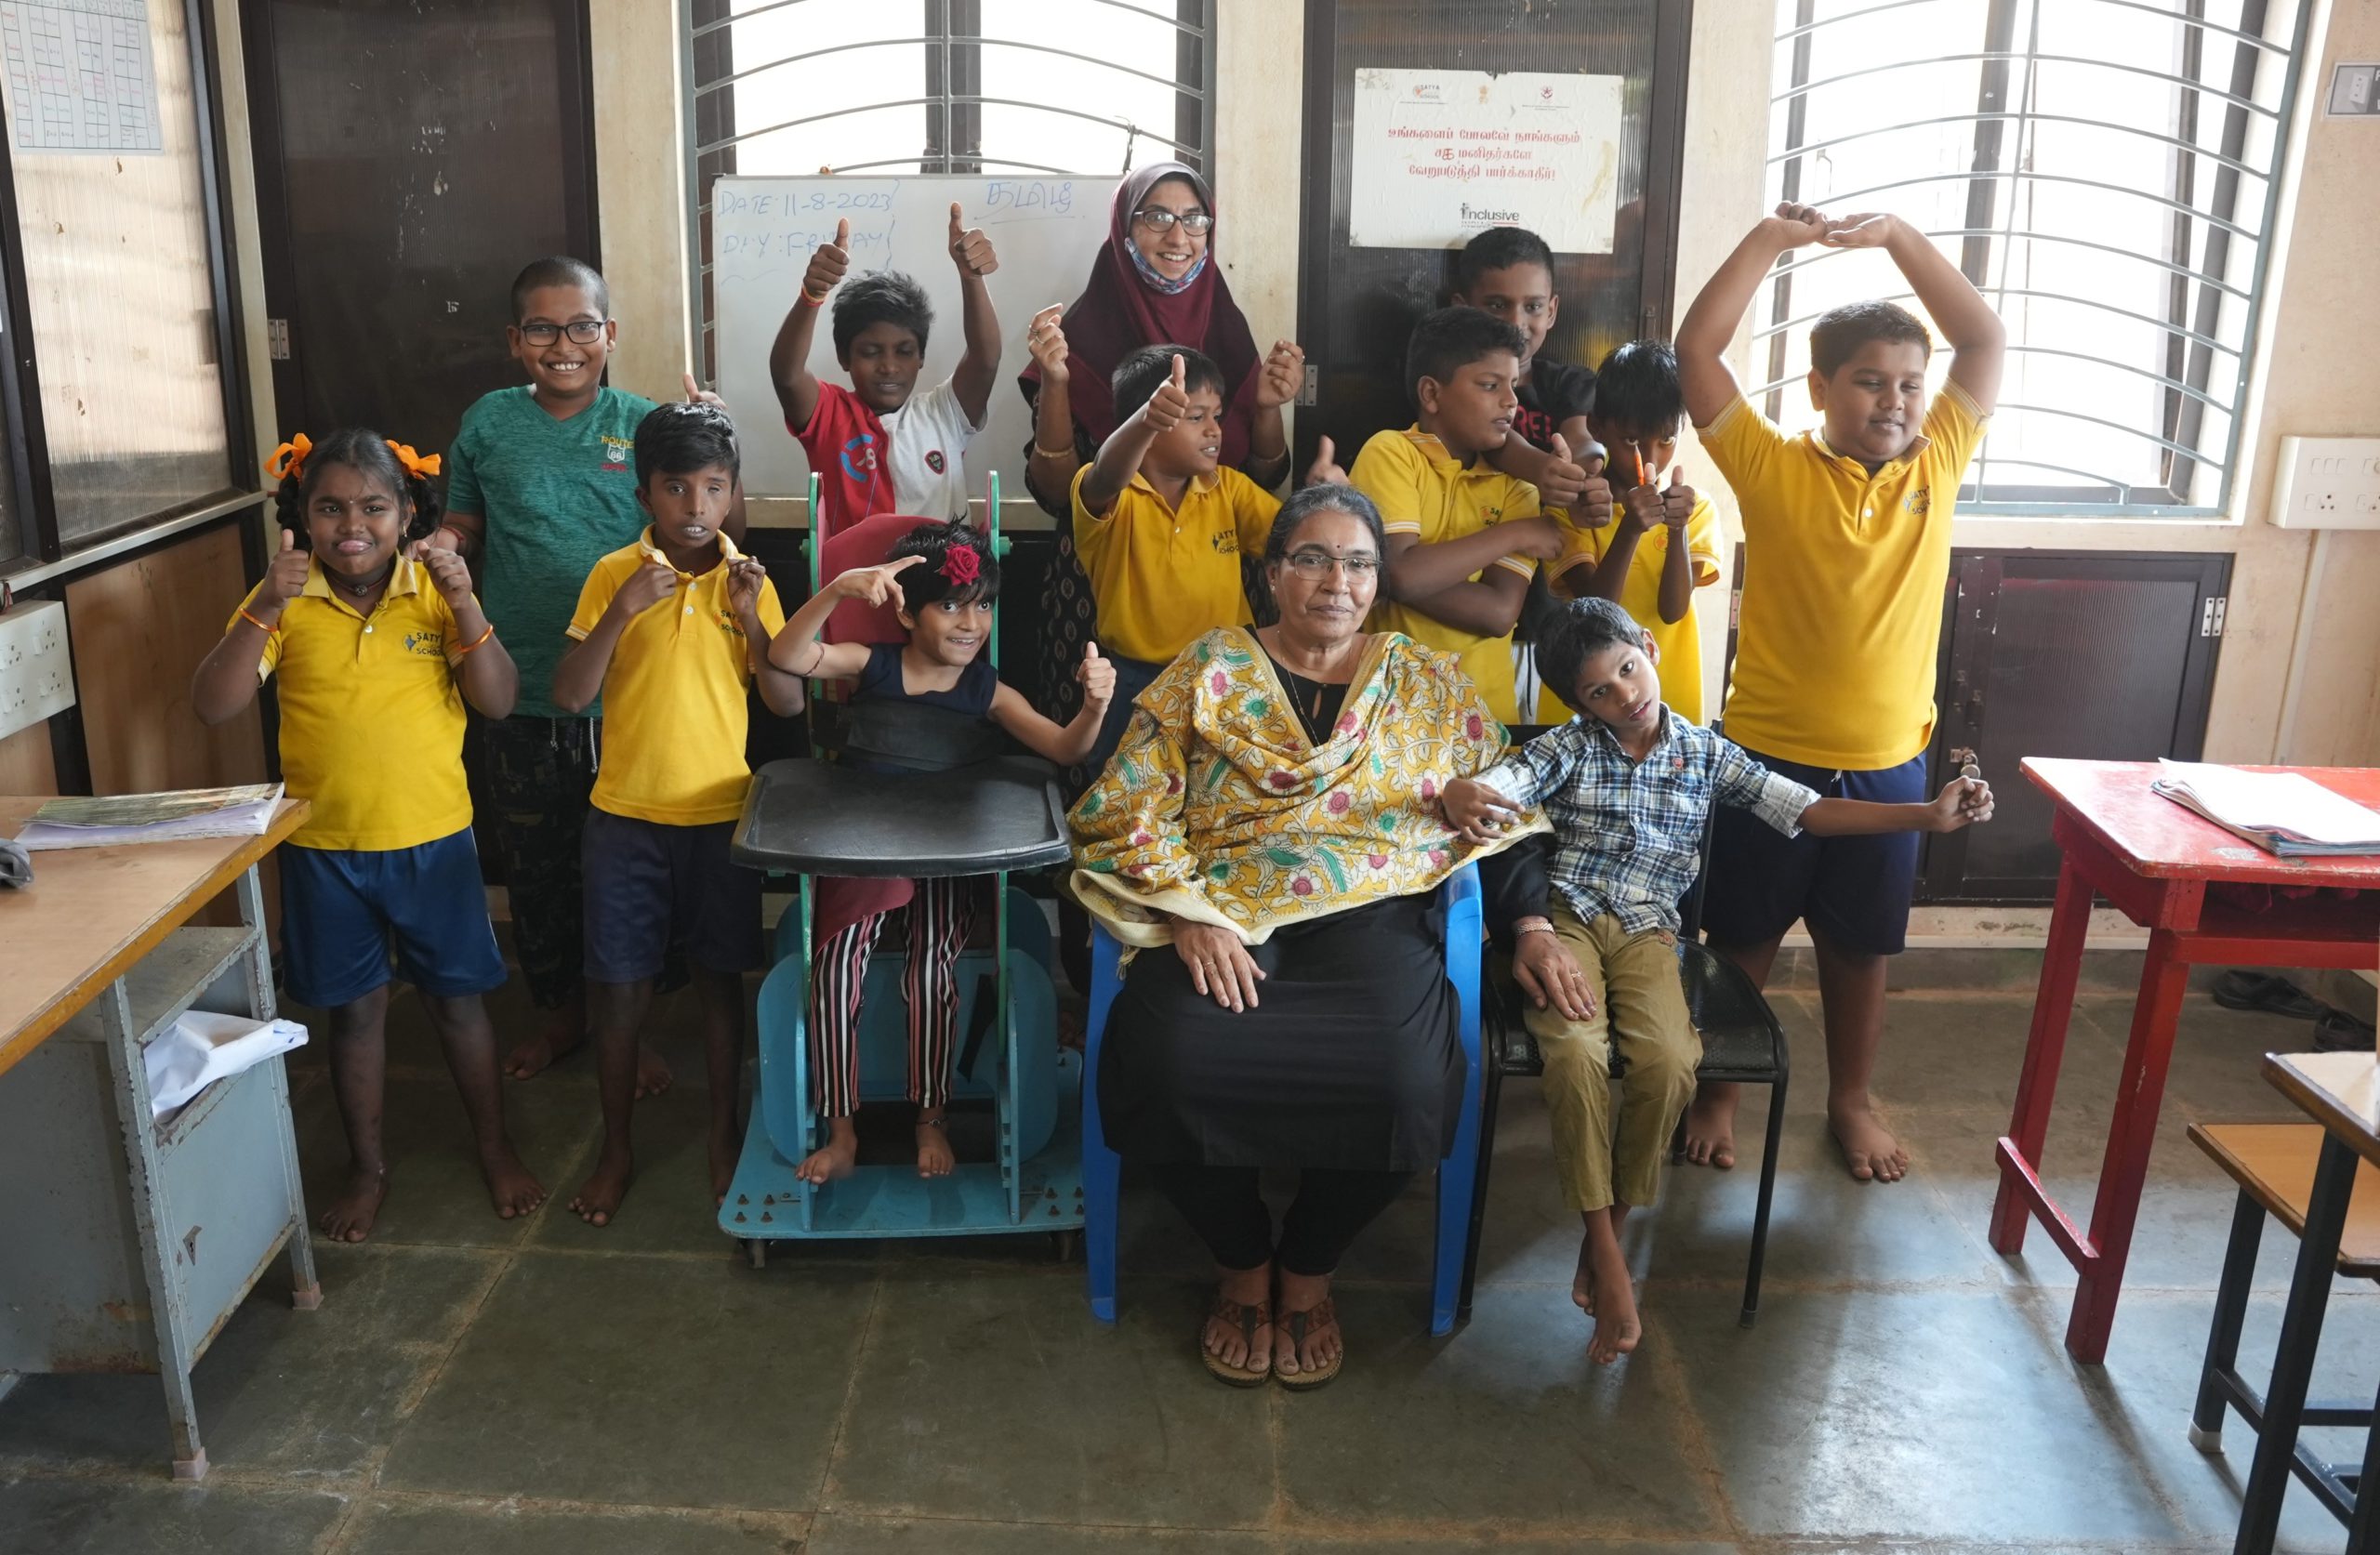 Satya Special School: polishing hidden potential in children with disabilities